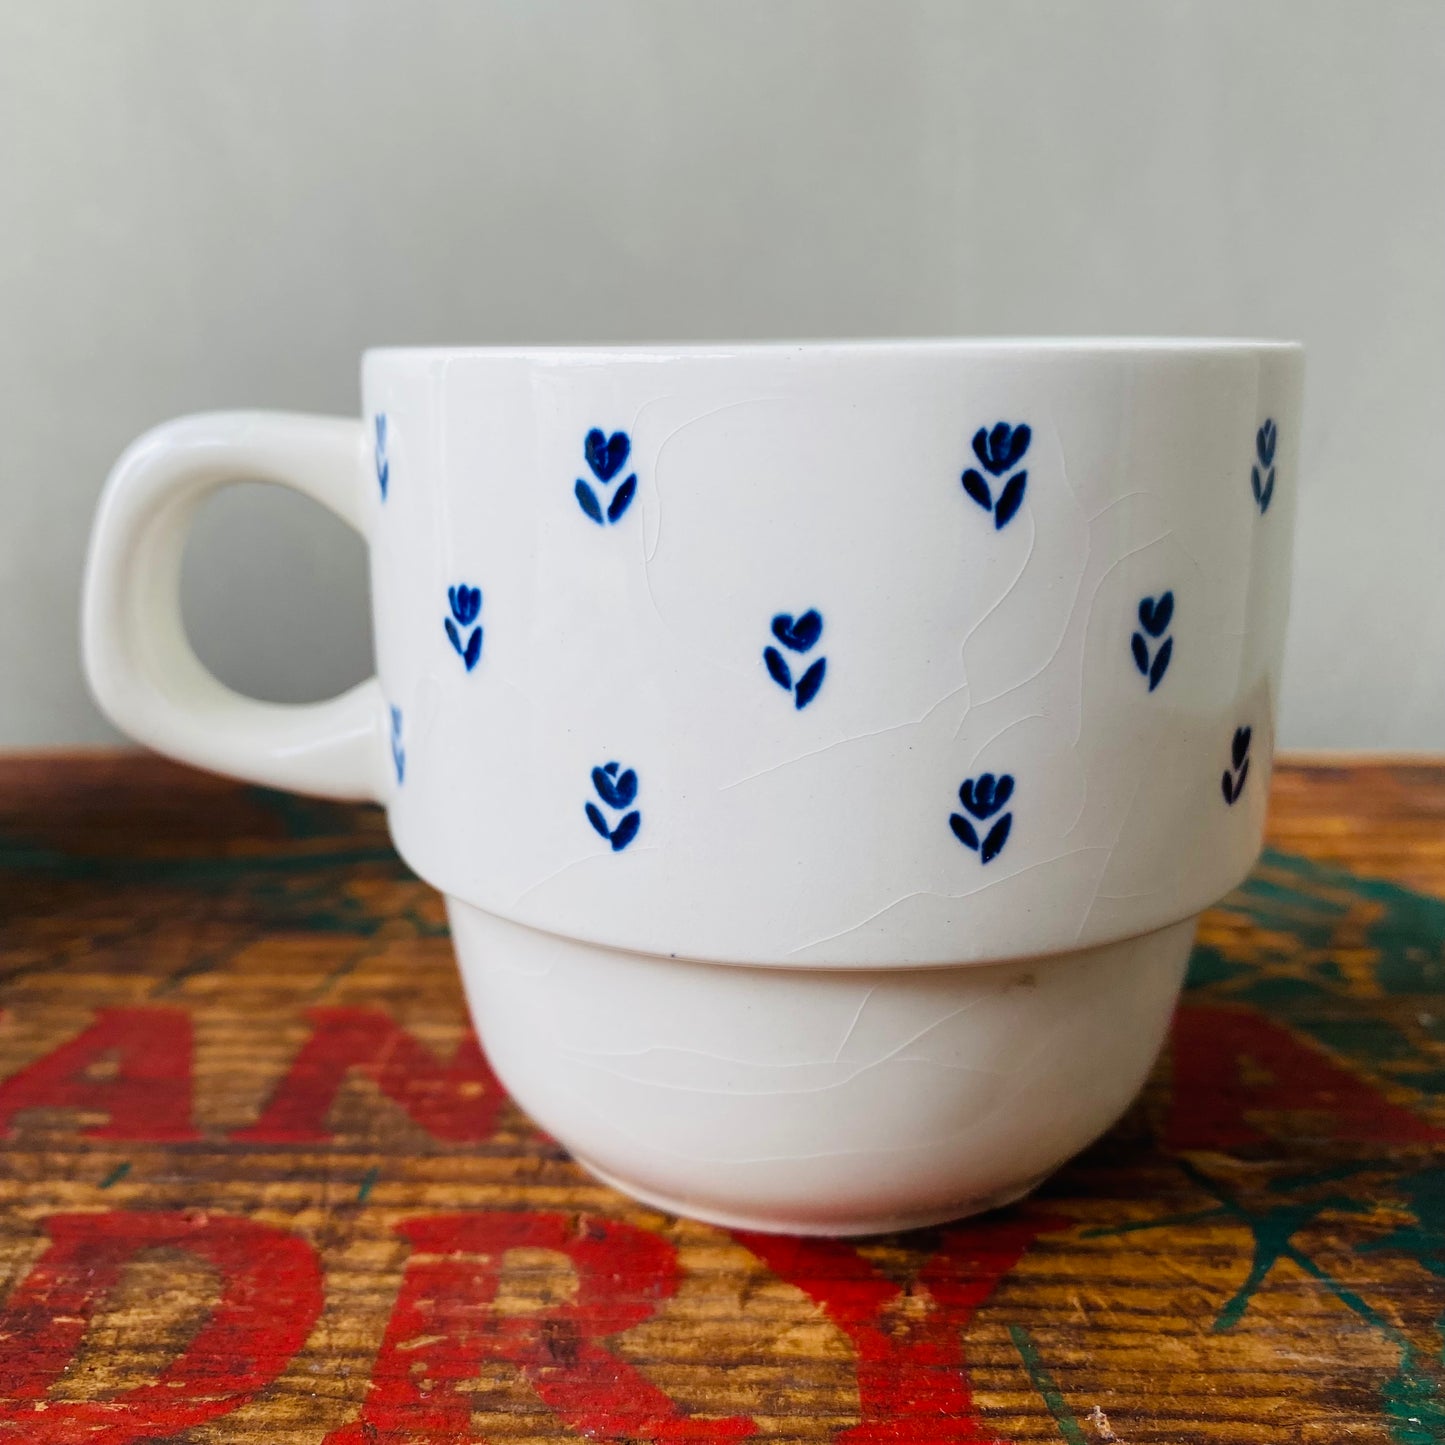 【England vintage】tulip mug